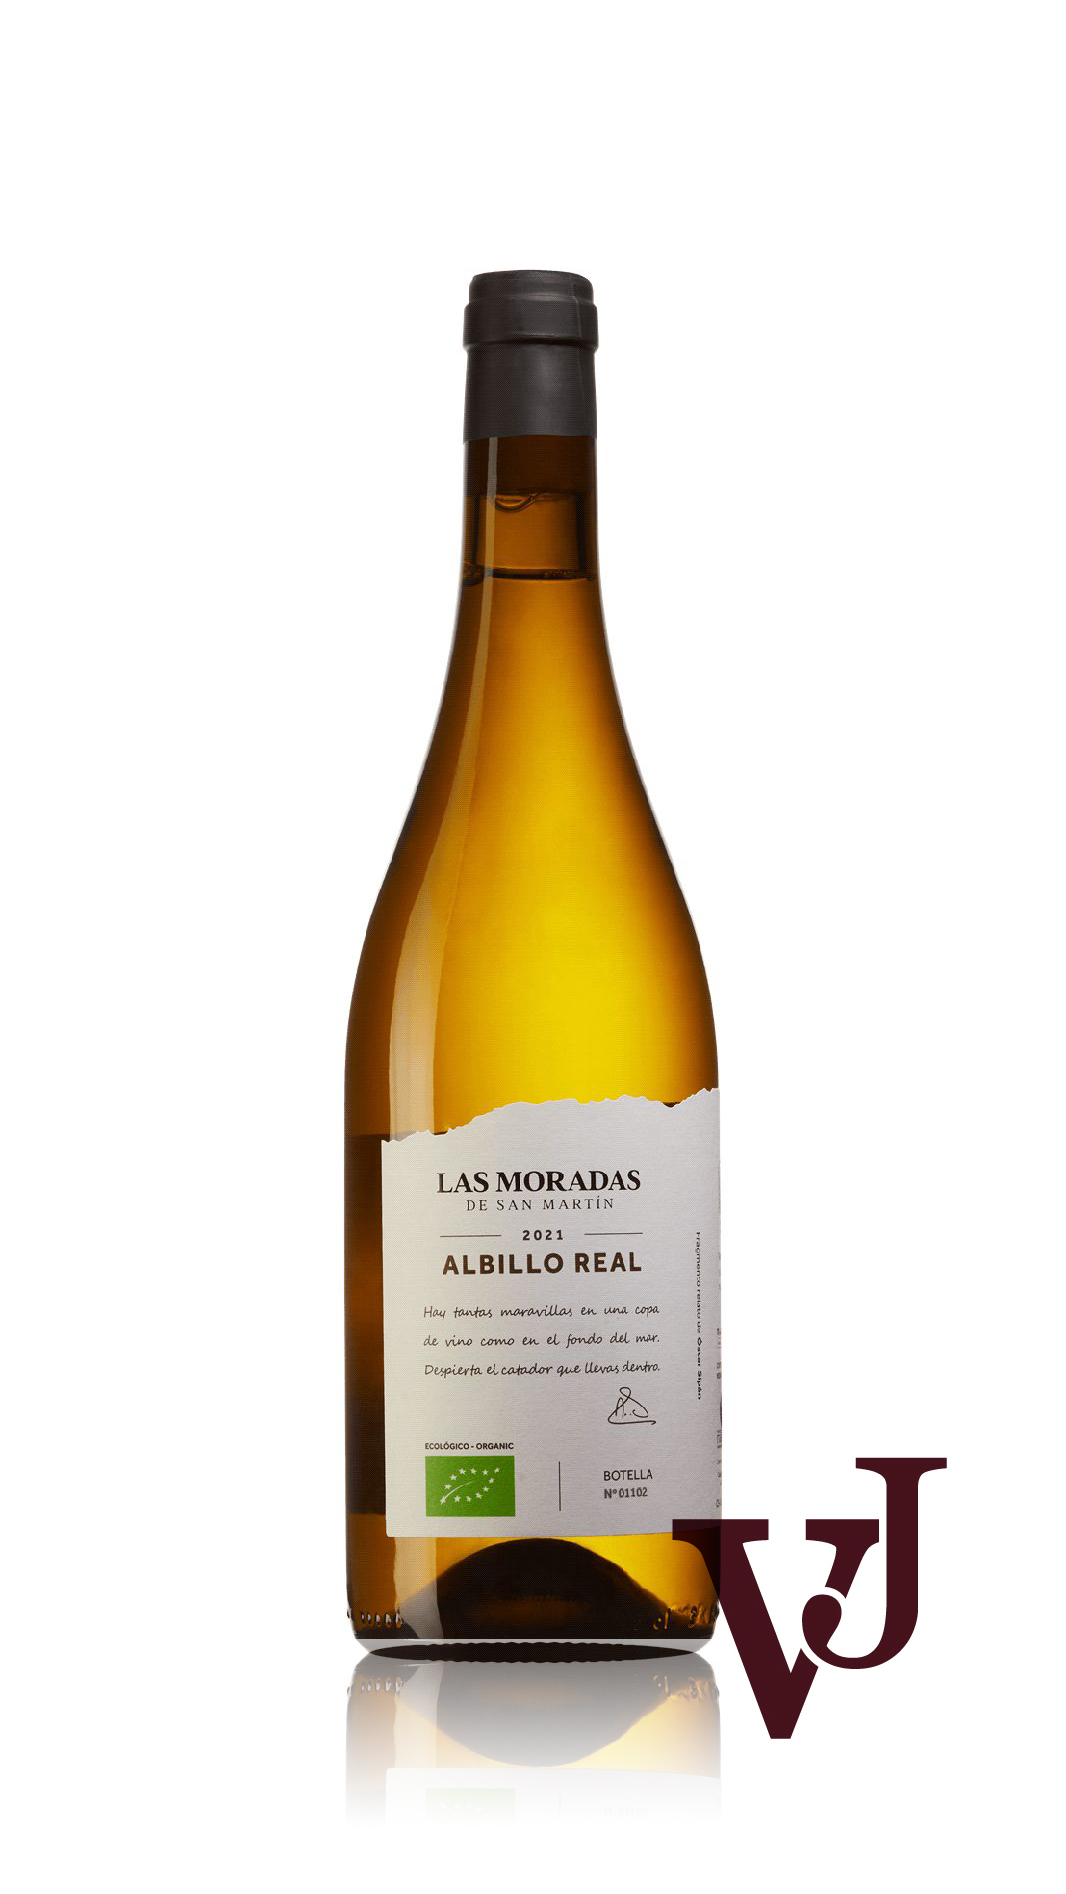 Vitt Vin - Las Moradas Albillo Real 2021 artikel nummer 9511401 från producenten San Martin från området Spanien.